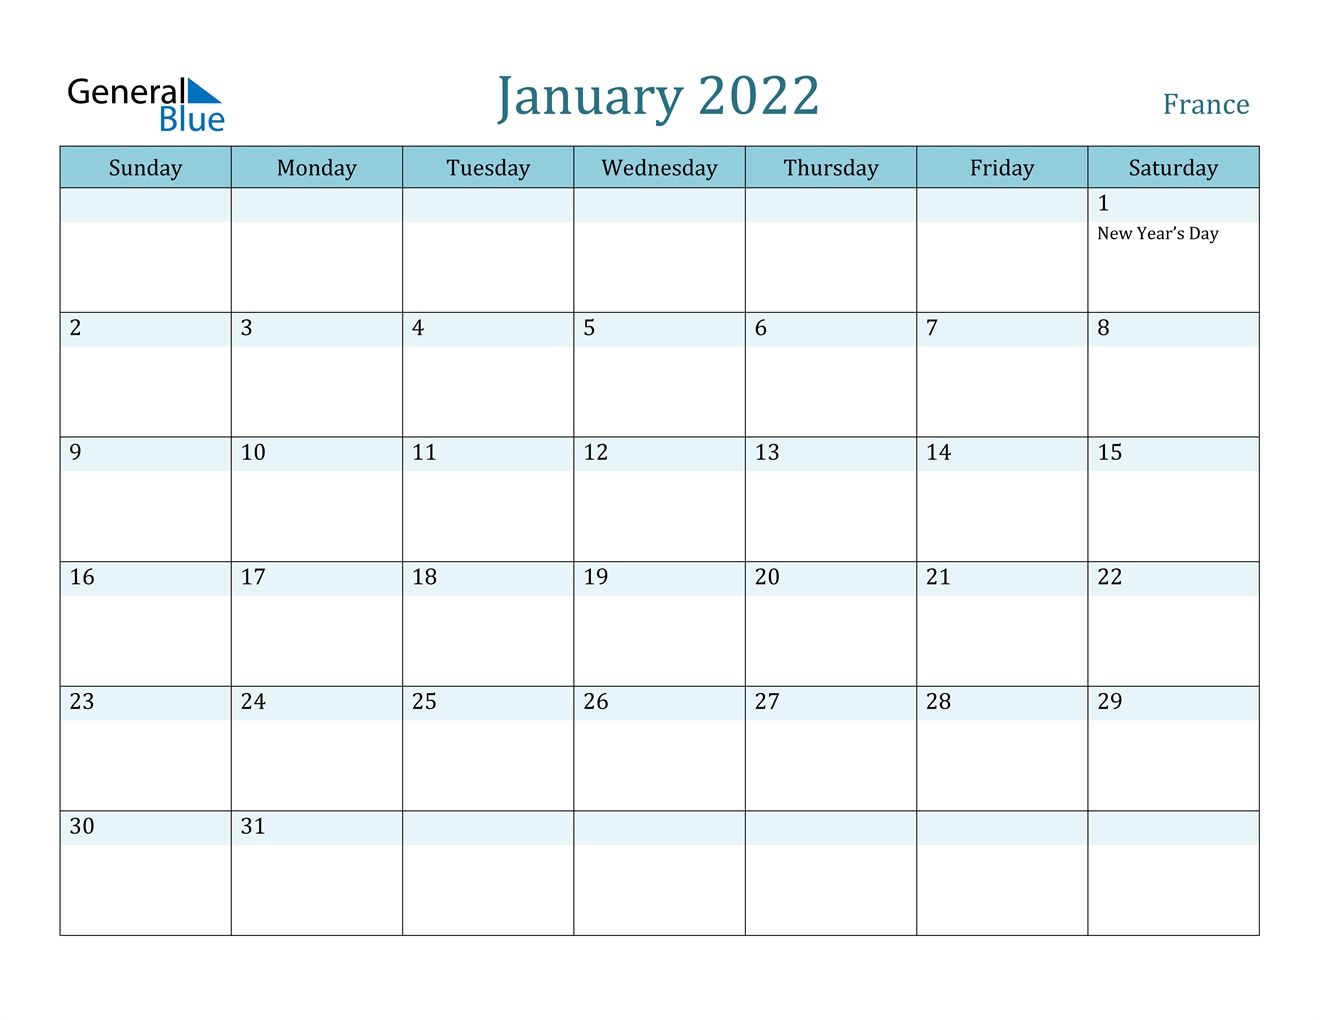 January 2022 Calendar - France